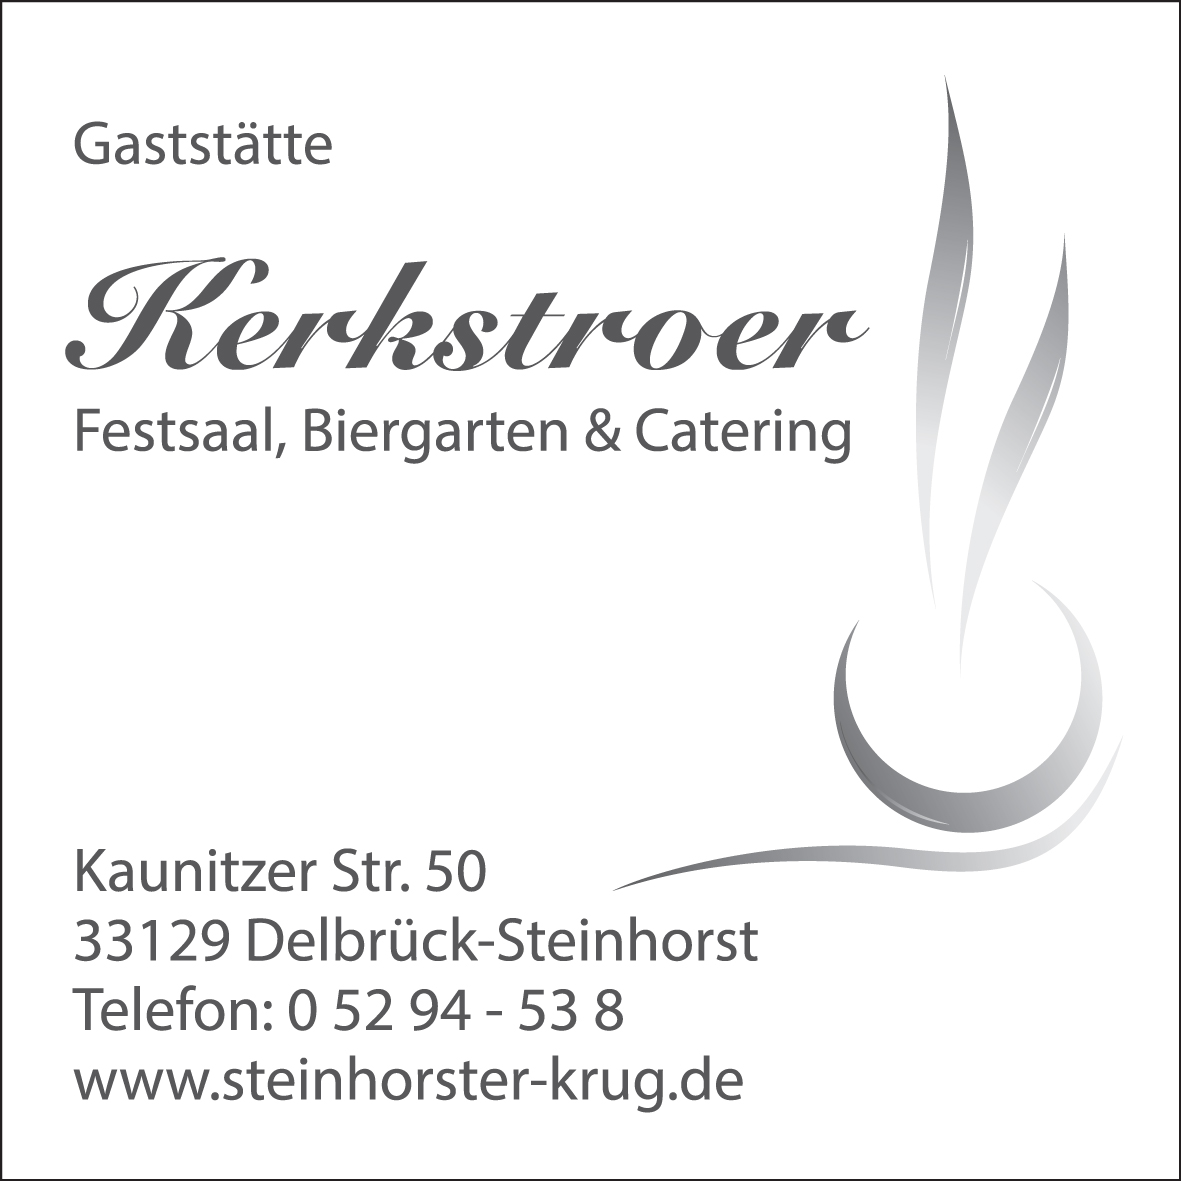 Steinhorster Krug